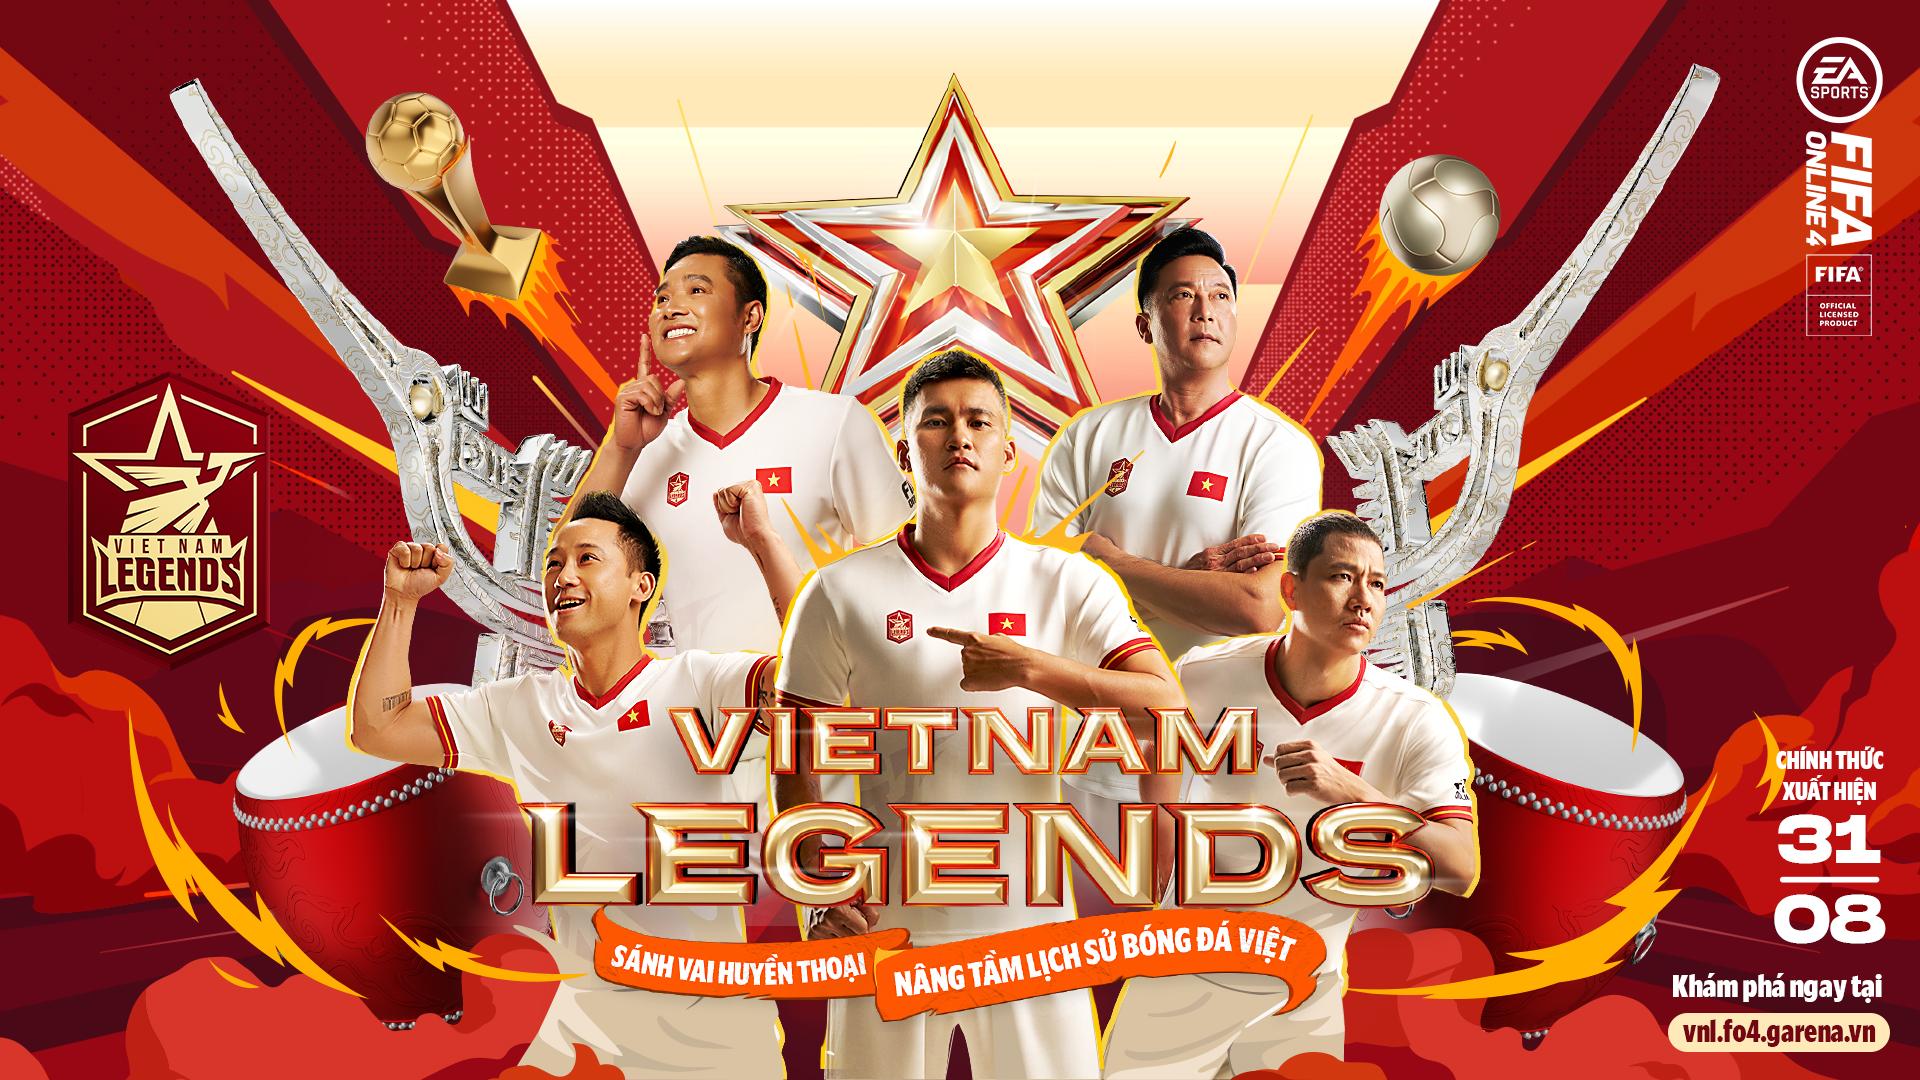 Hồng Sơn và các huyền thoại bóng đá Việt Nam bất ngờ xuất hiện trong FIFA Online 4 - Ảnh 1.